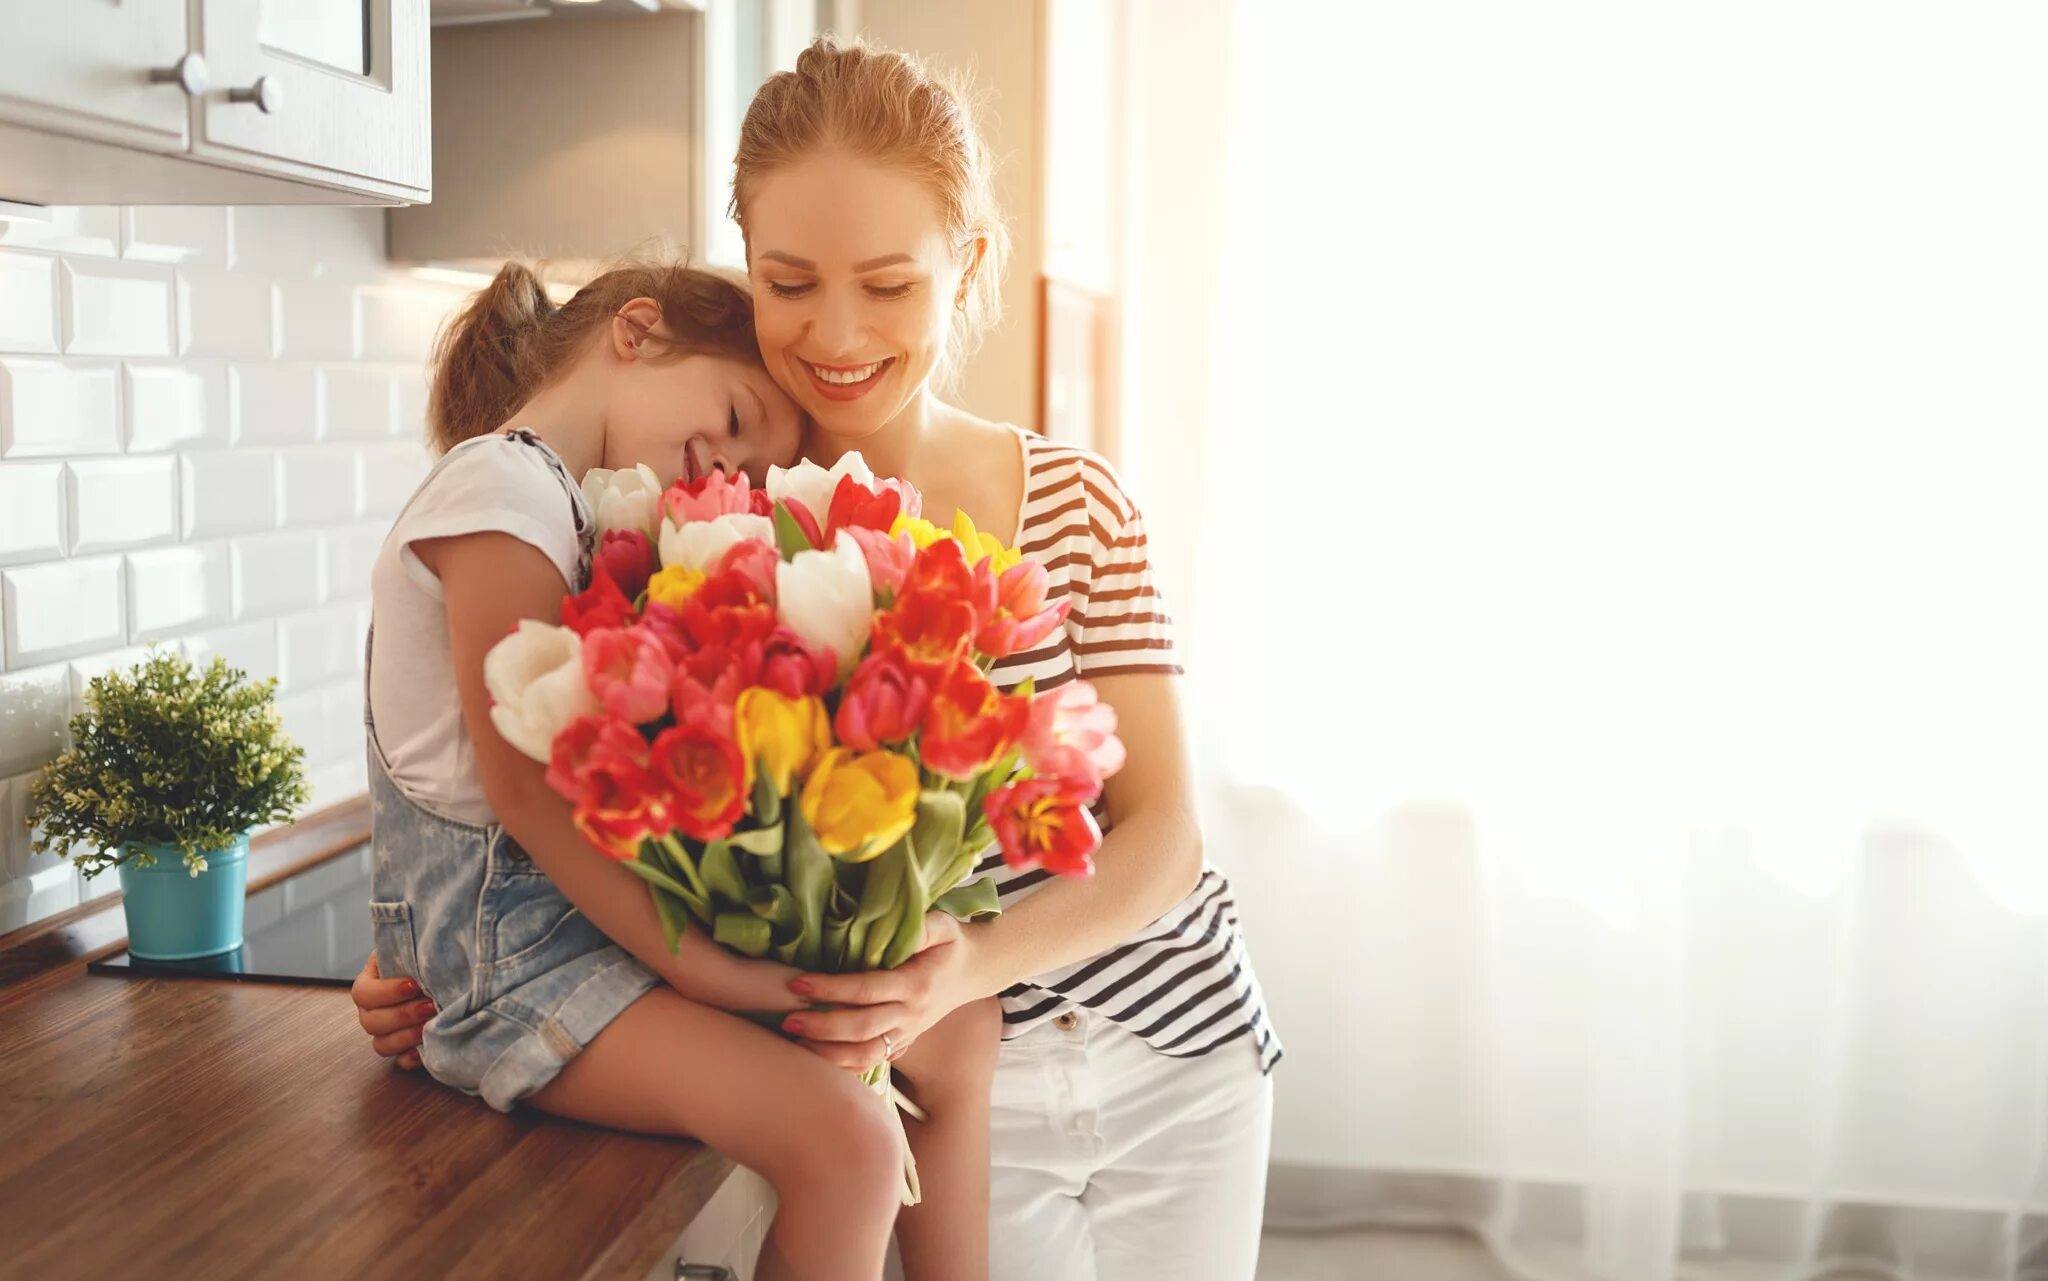 Цветы для мамы. Красивый букет для мамы. День матери. Ребенок дарит цветы маме. Почему мама красивая